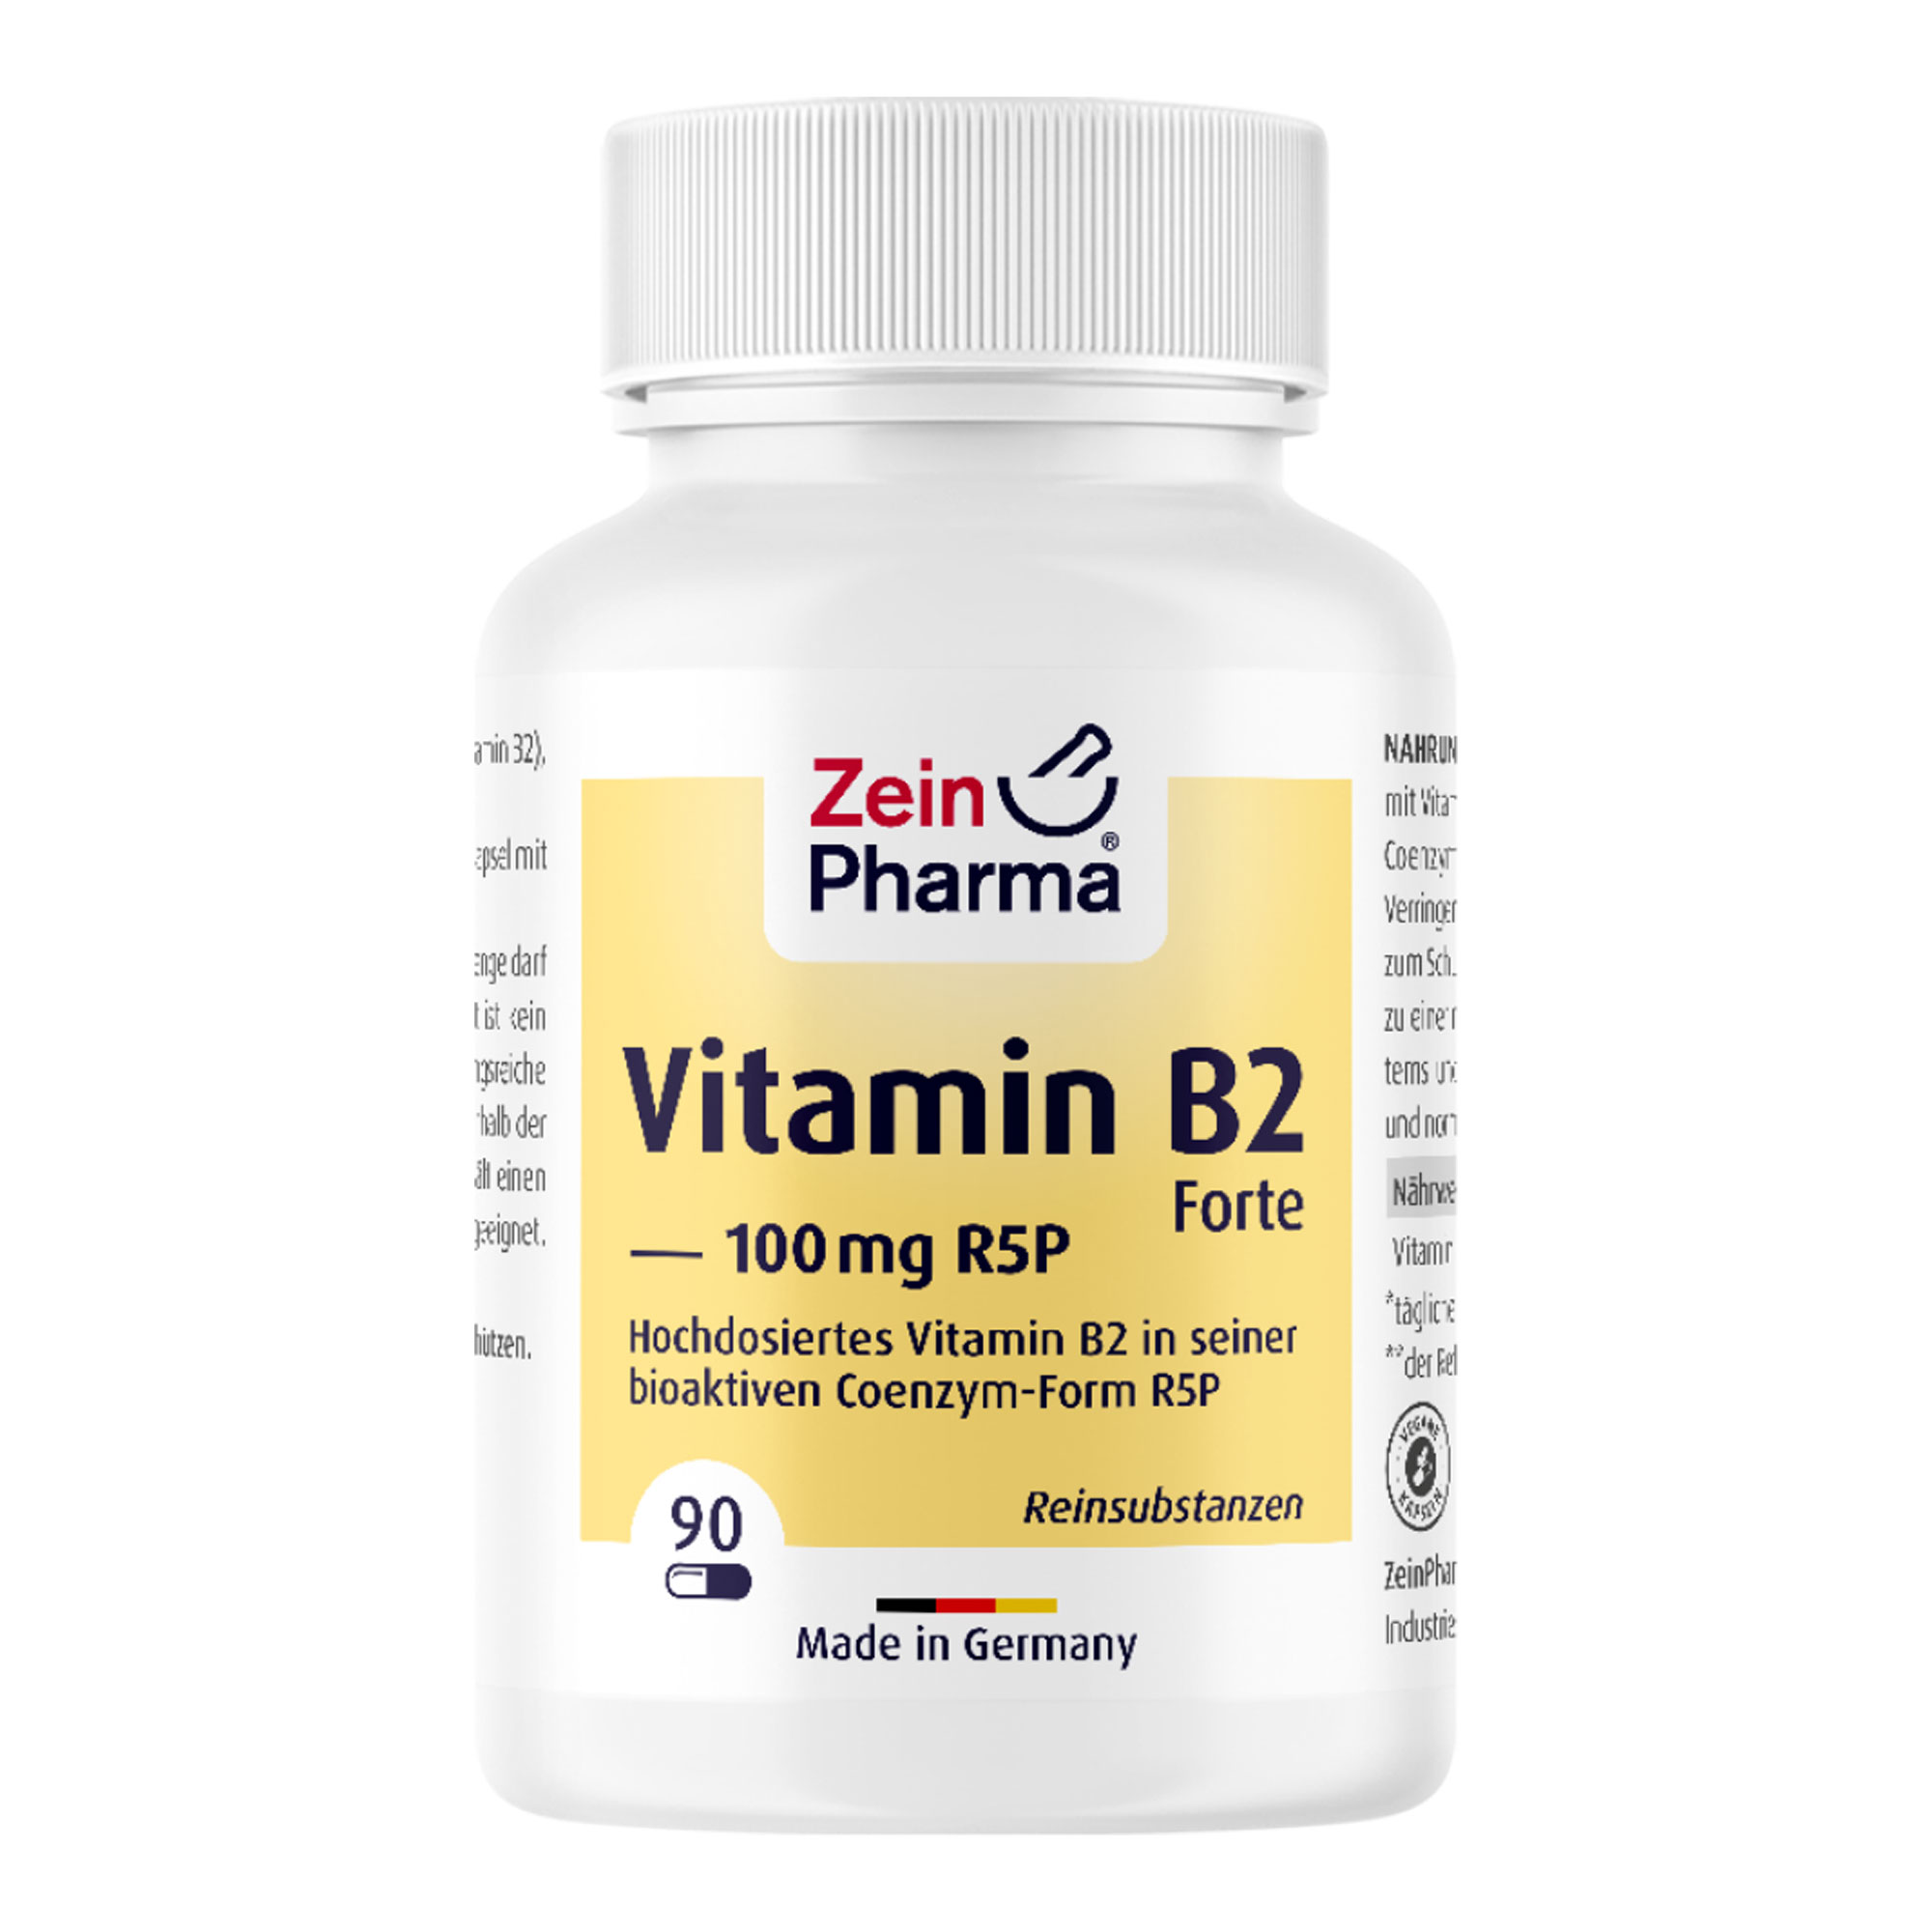 Nahrungsergänzungsmittel mit Vitamin B2 in seiner biologisch aktiven Coenzym-Form R5P.